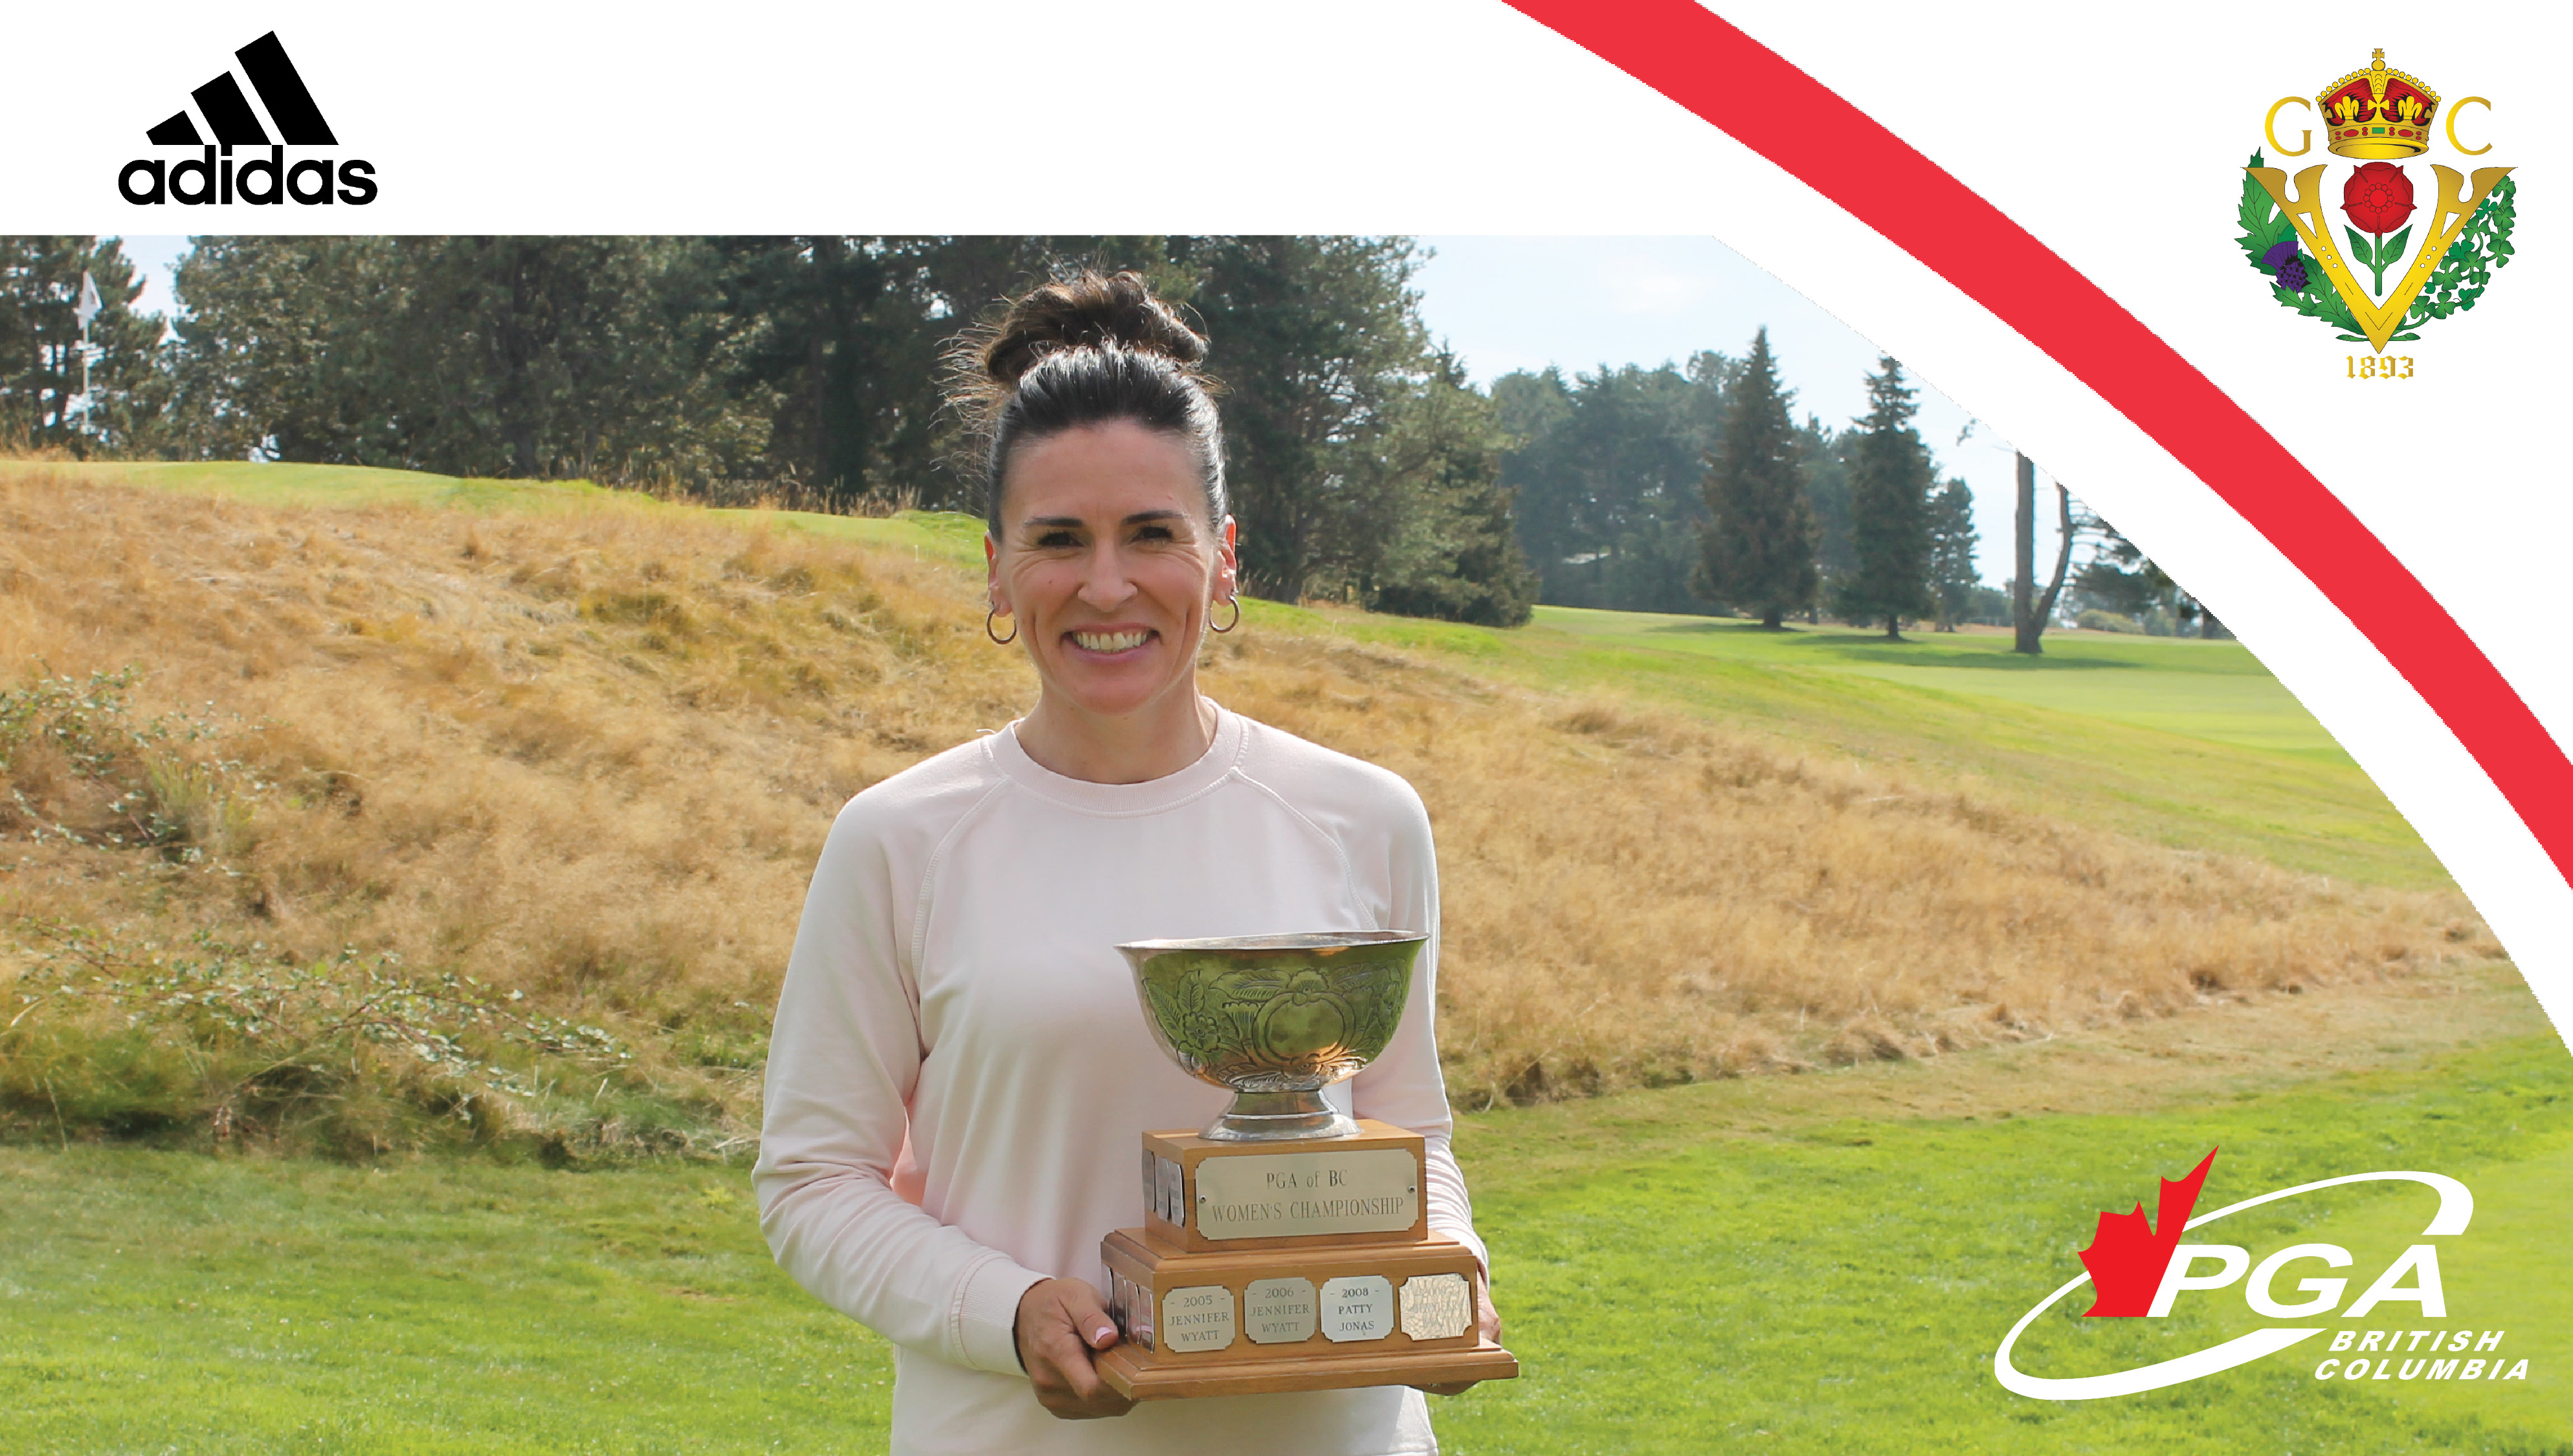 Zibrik wins third Womens Championship PGA of British Columbia